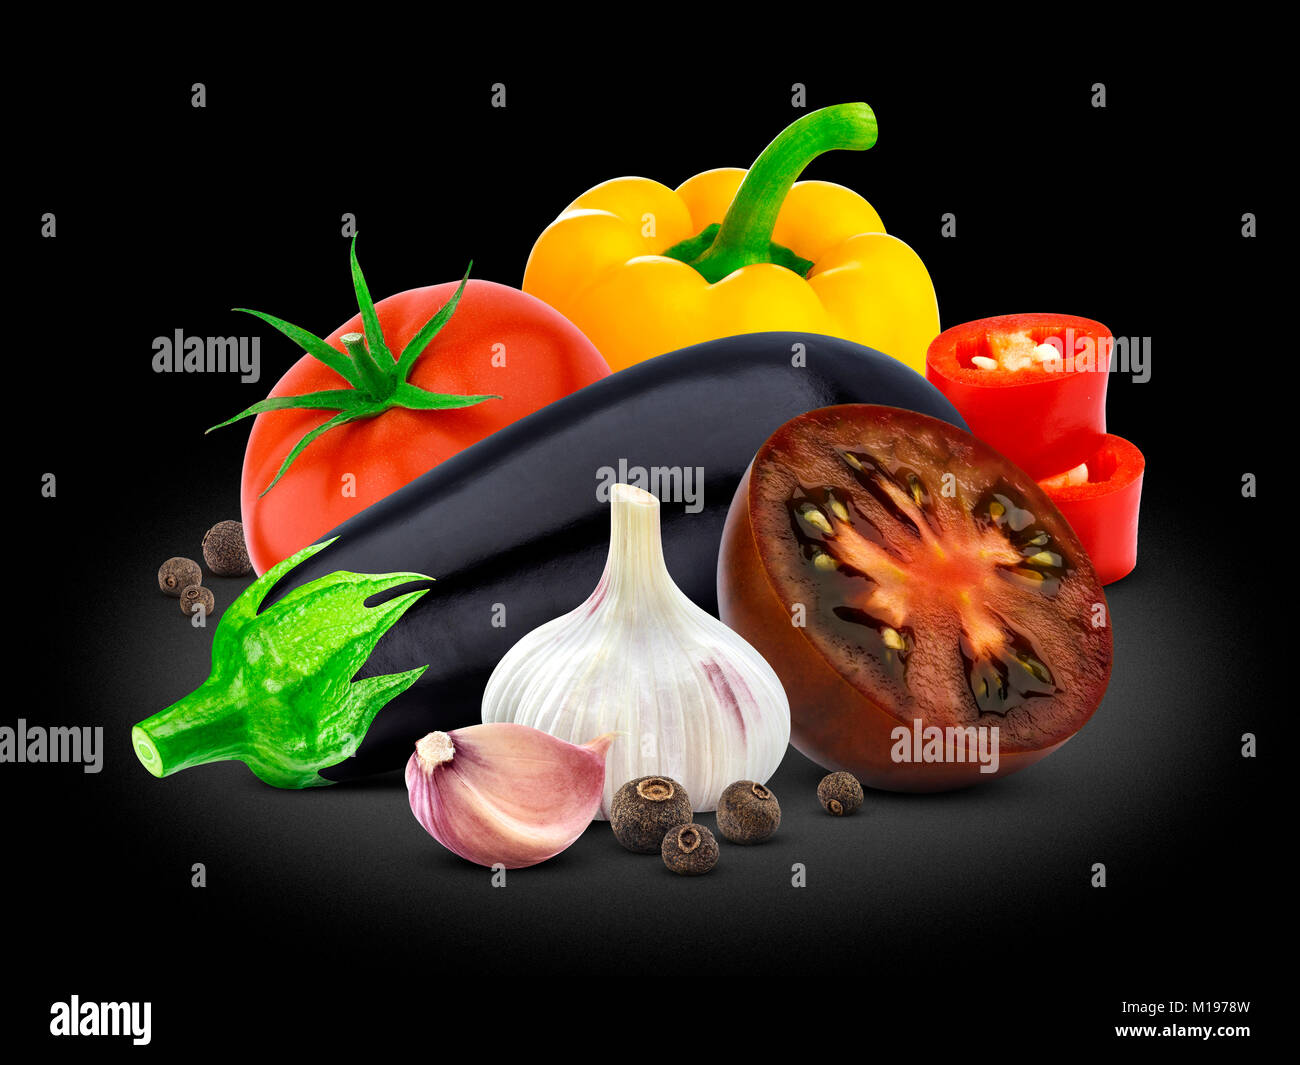 Gruppe von Gemüse. Auberginen, Tomaten, Paprika und Knoblauch auf schwarzem Hintergrund. Stockfoto